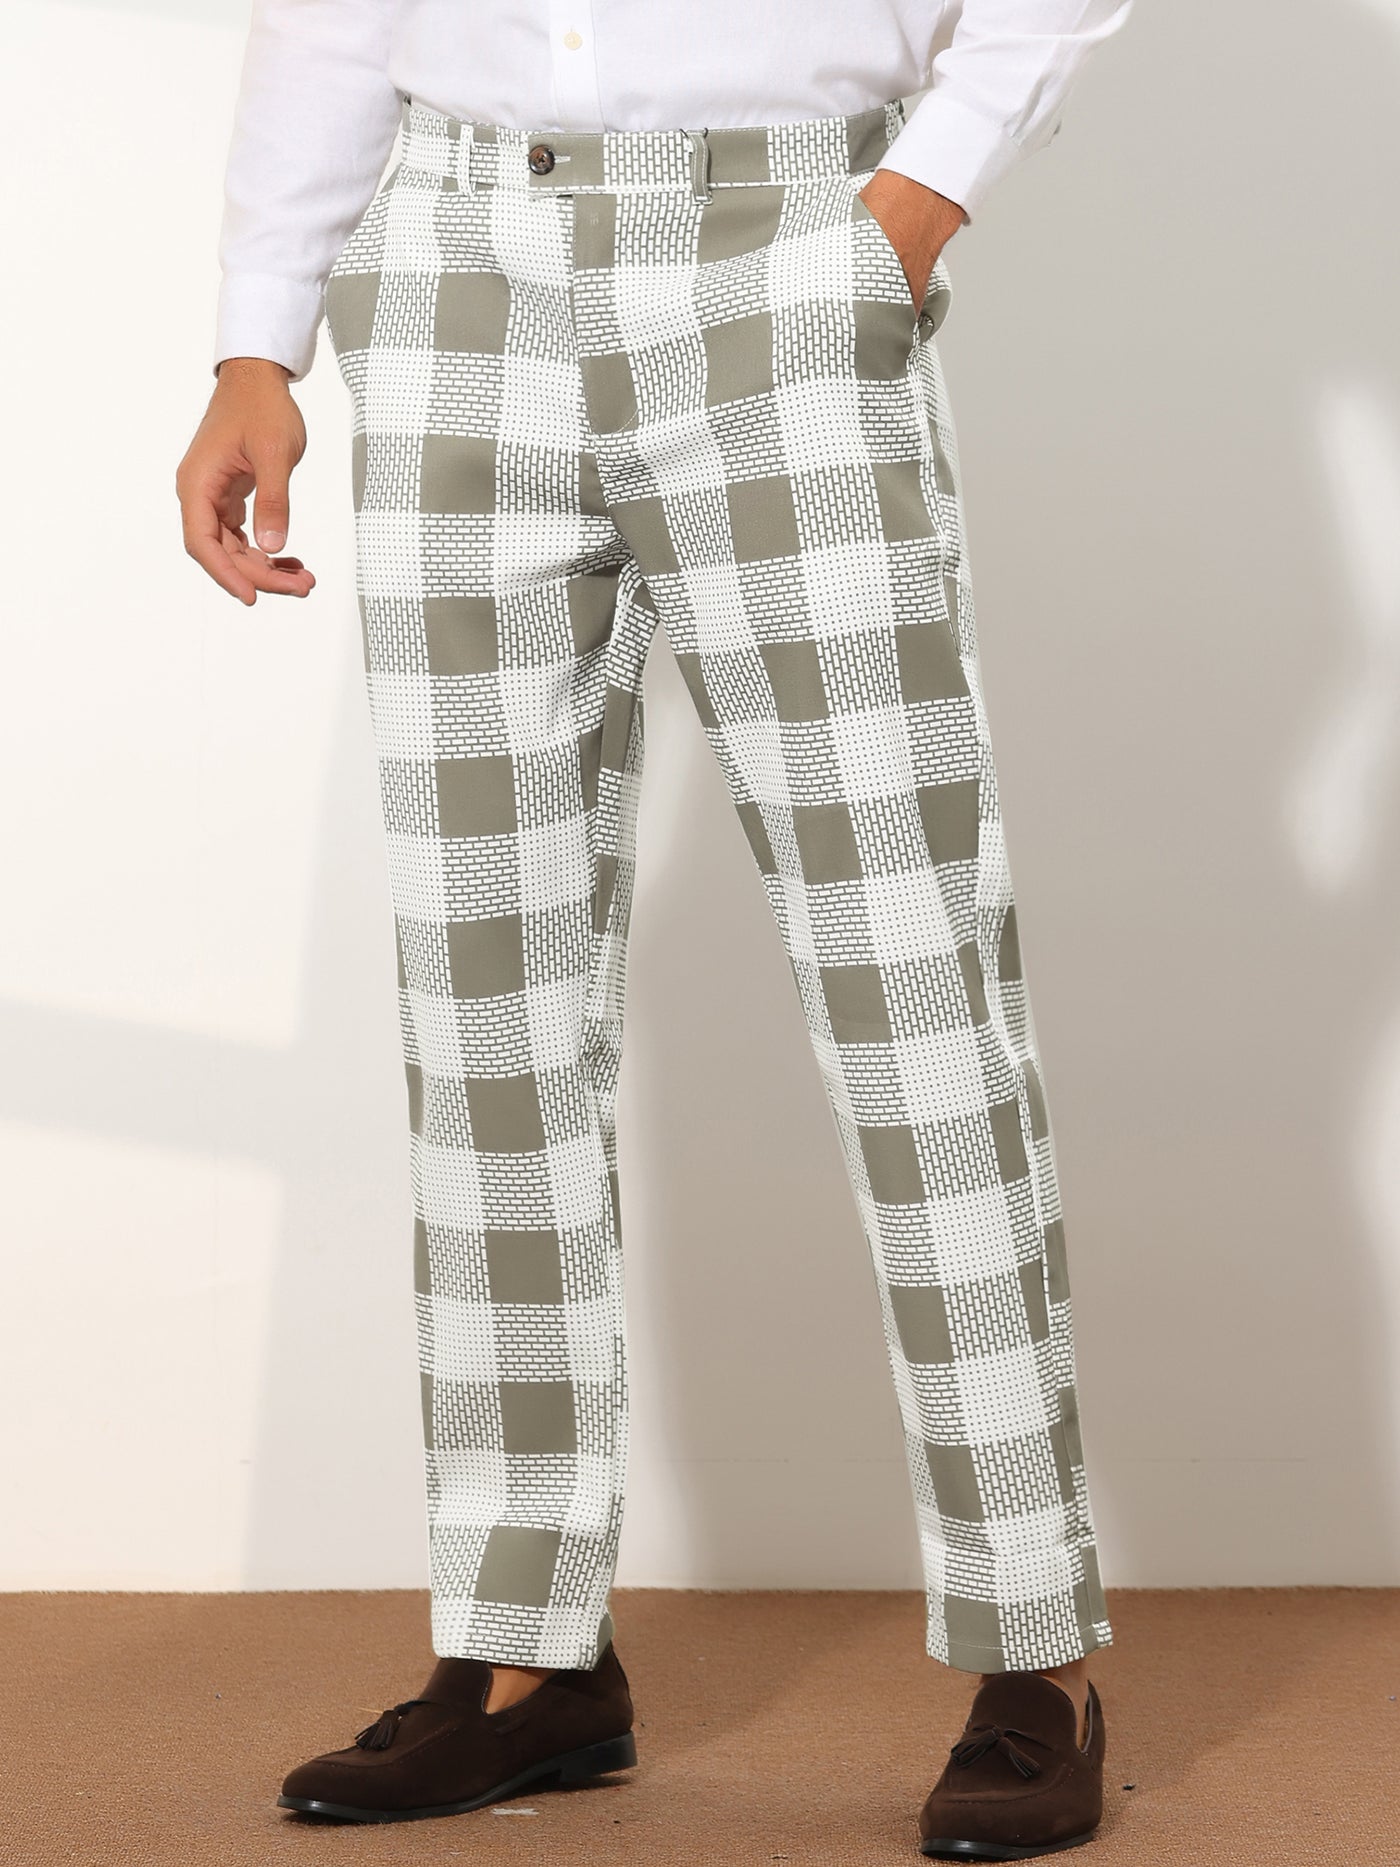 Bublédon Men's Plaid Regular Fit Contrast Color Casual Business Checked Pants